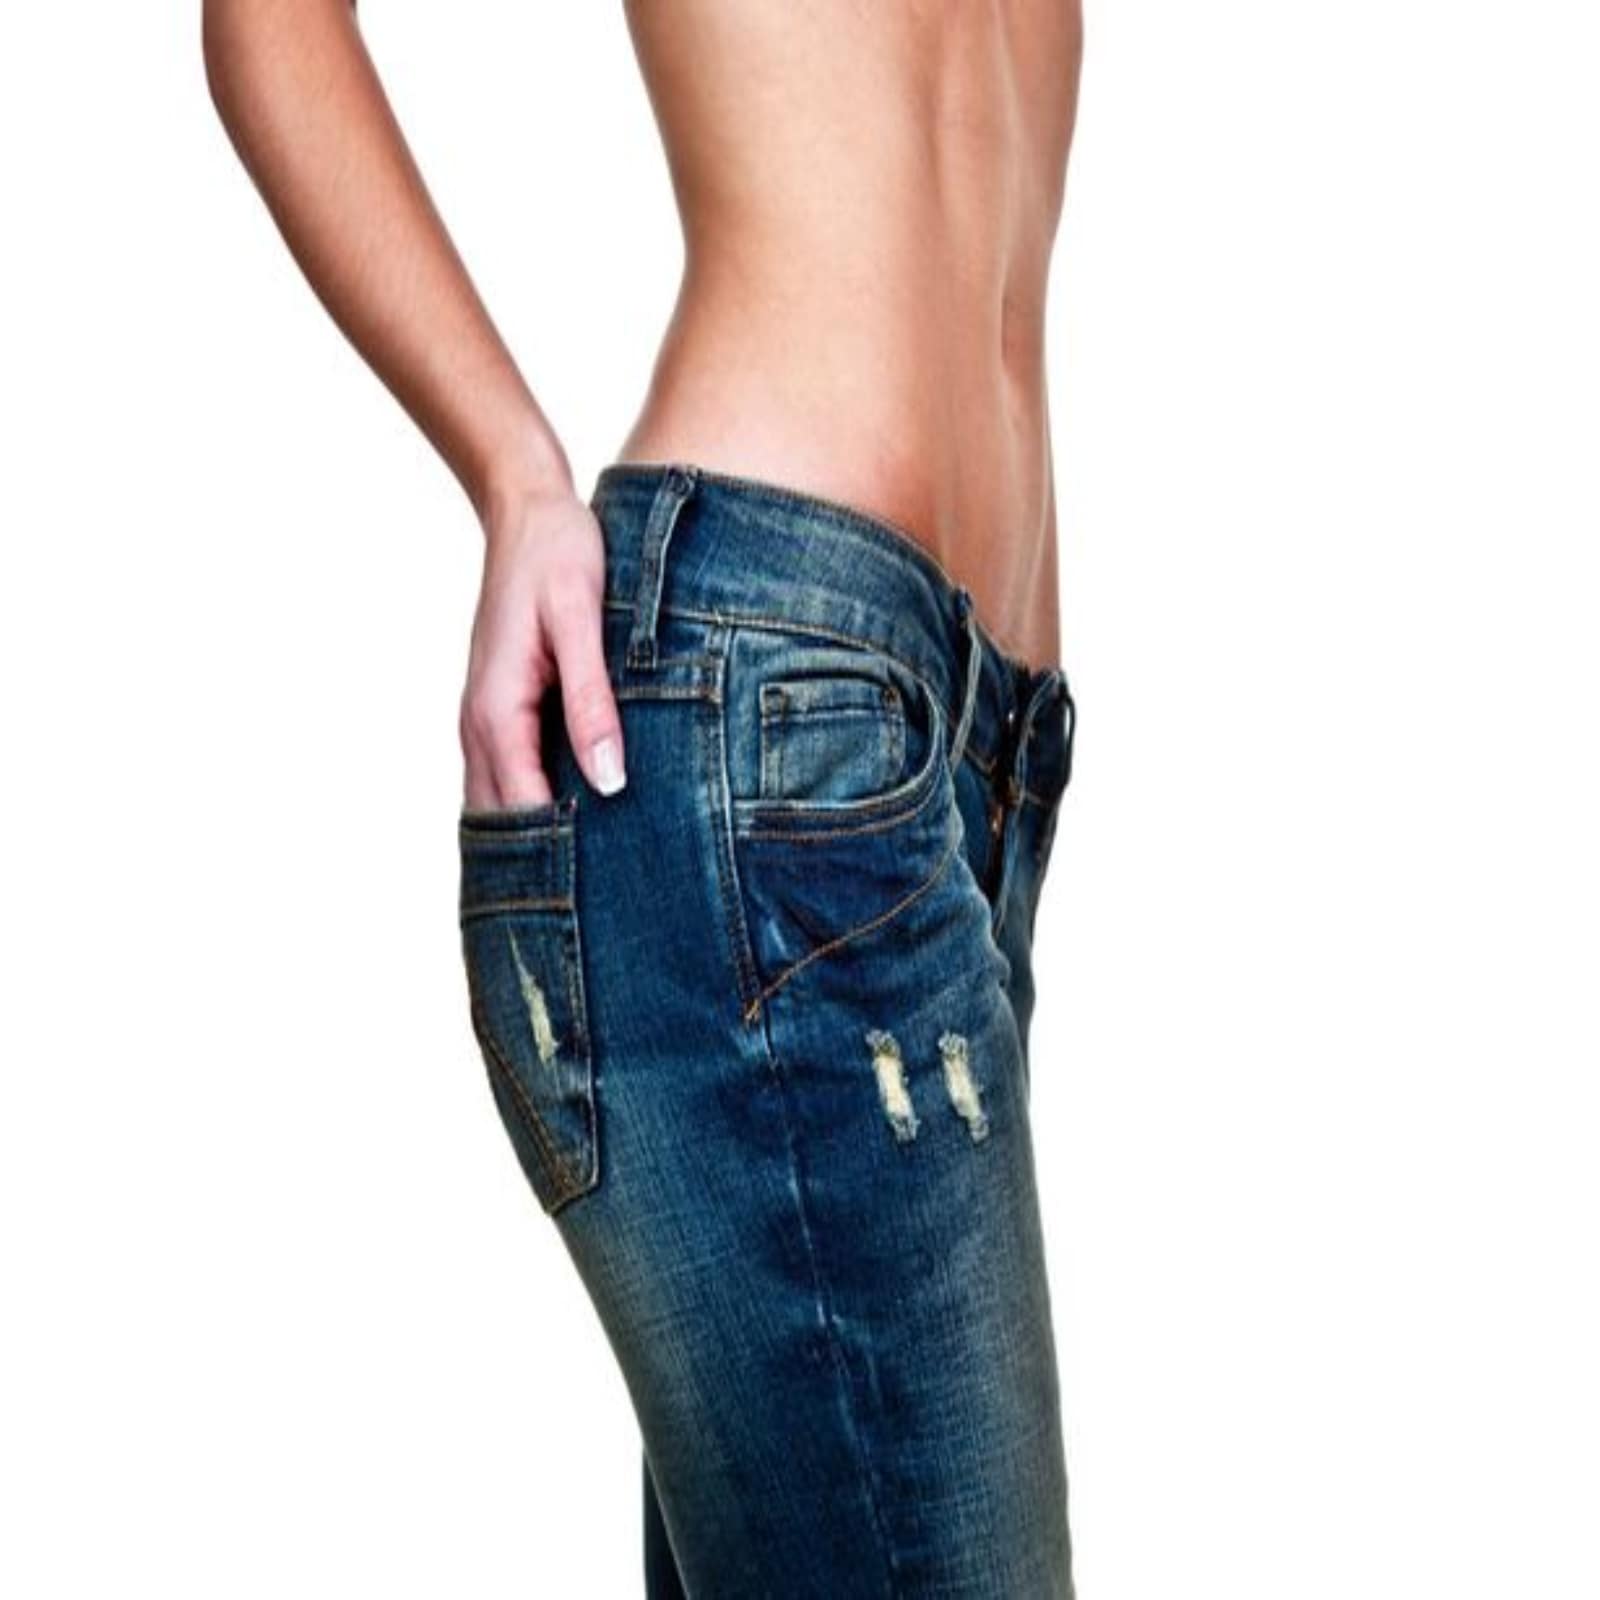 Sai perché i jeans hanno il taschino ecco la risposta corretta sancri